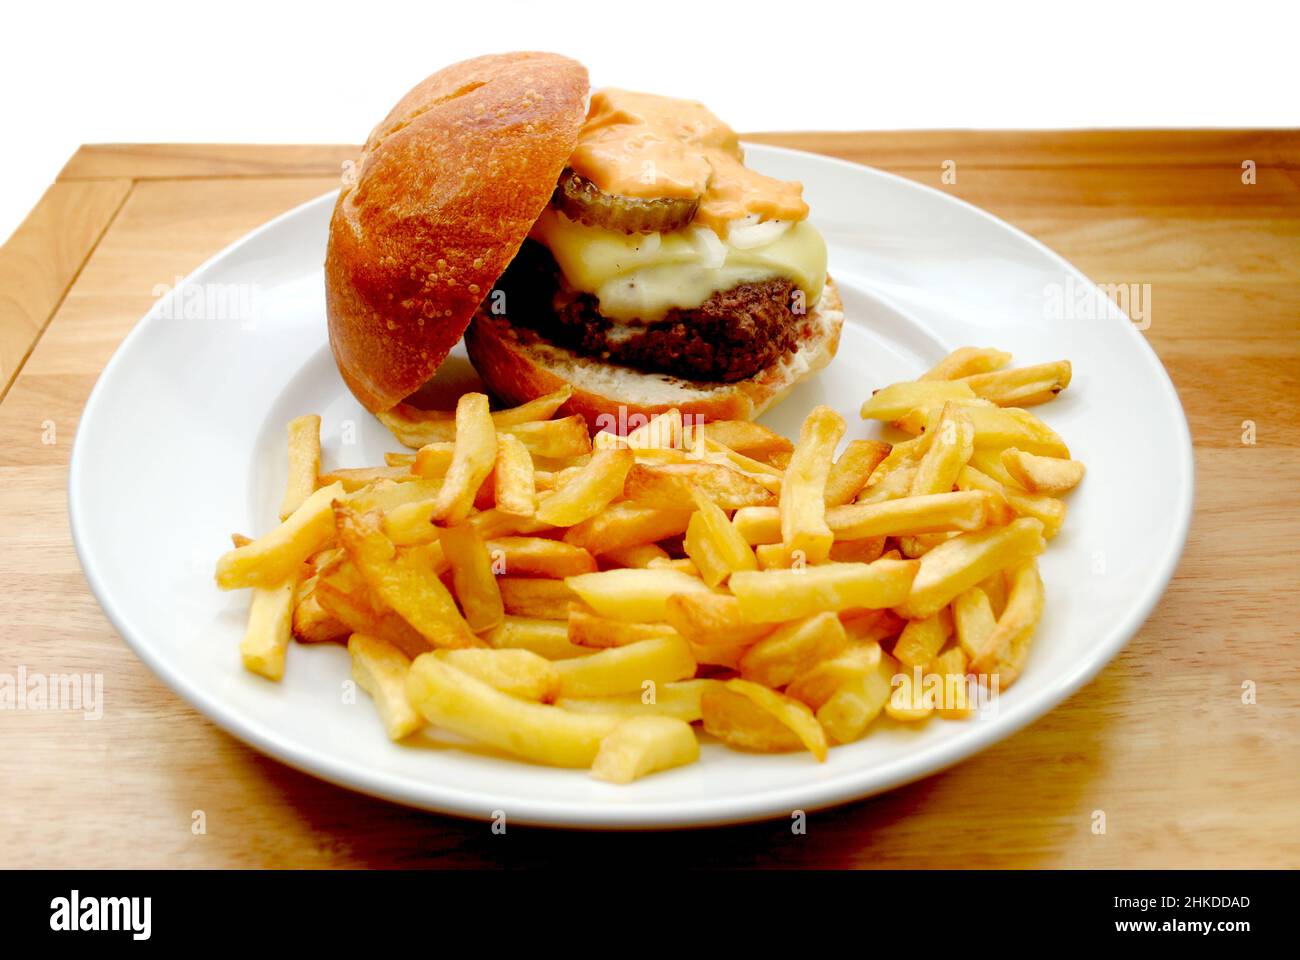 Croccanti patate fritte in un piatto con un Cheeseburger sullo sfondo Foto Stock